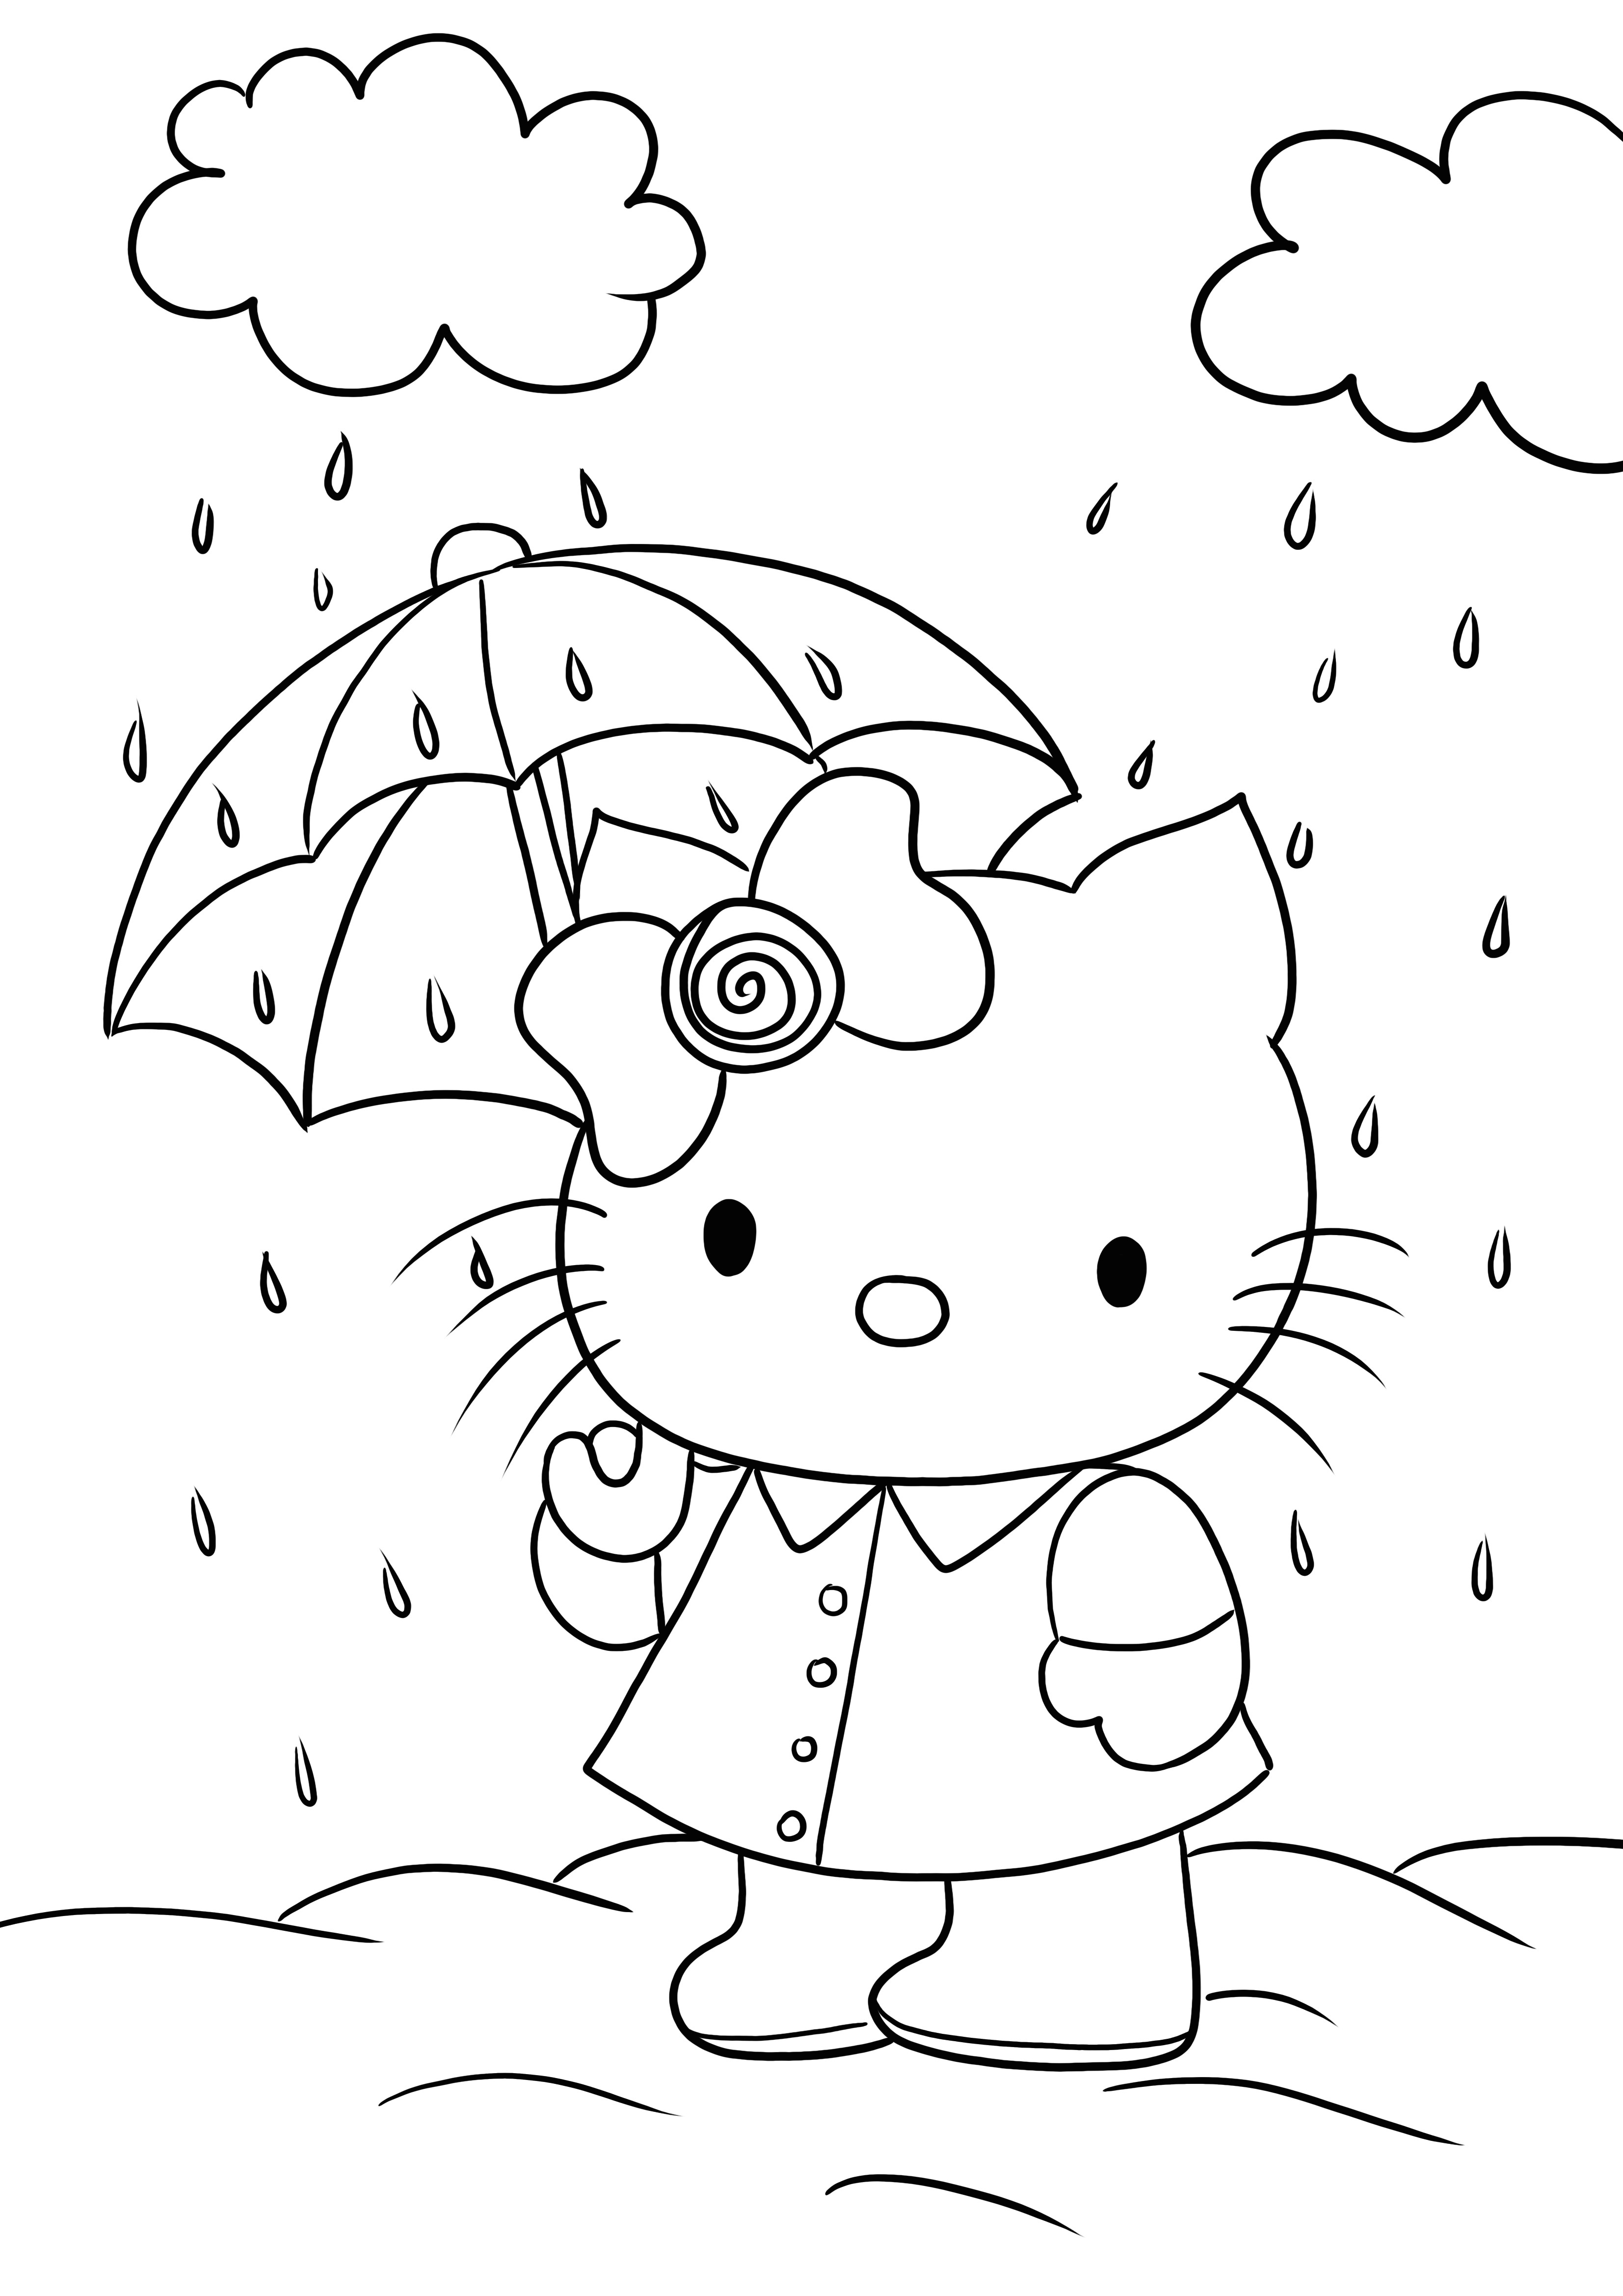 Hello Kitty jest pod parasolem gotowym do wydrukowania i pokolorowania obrazka